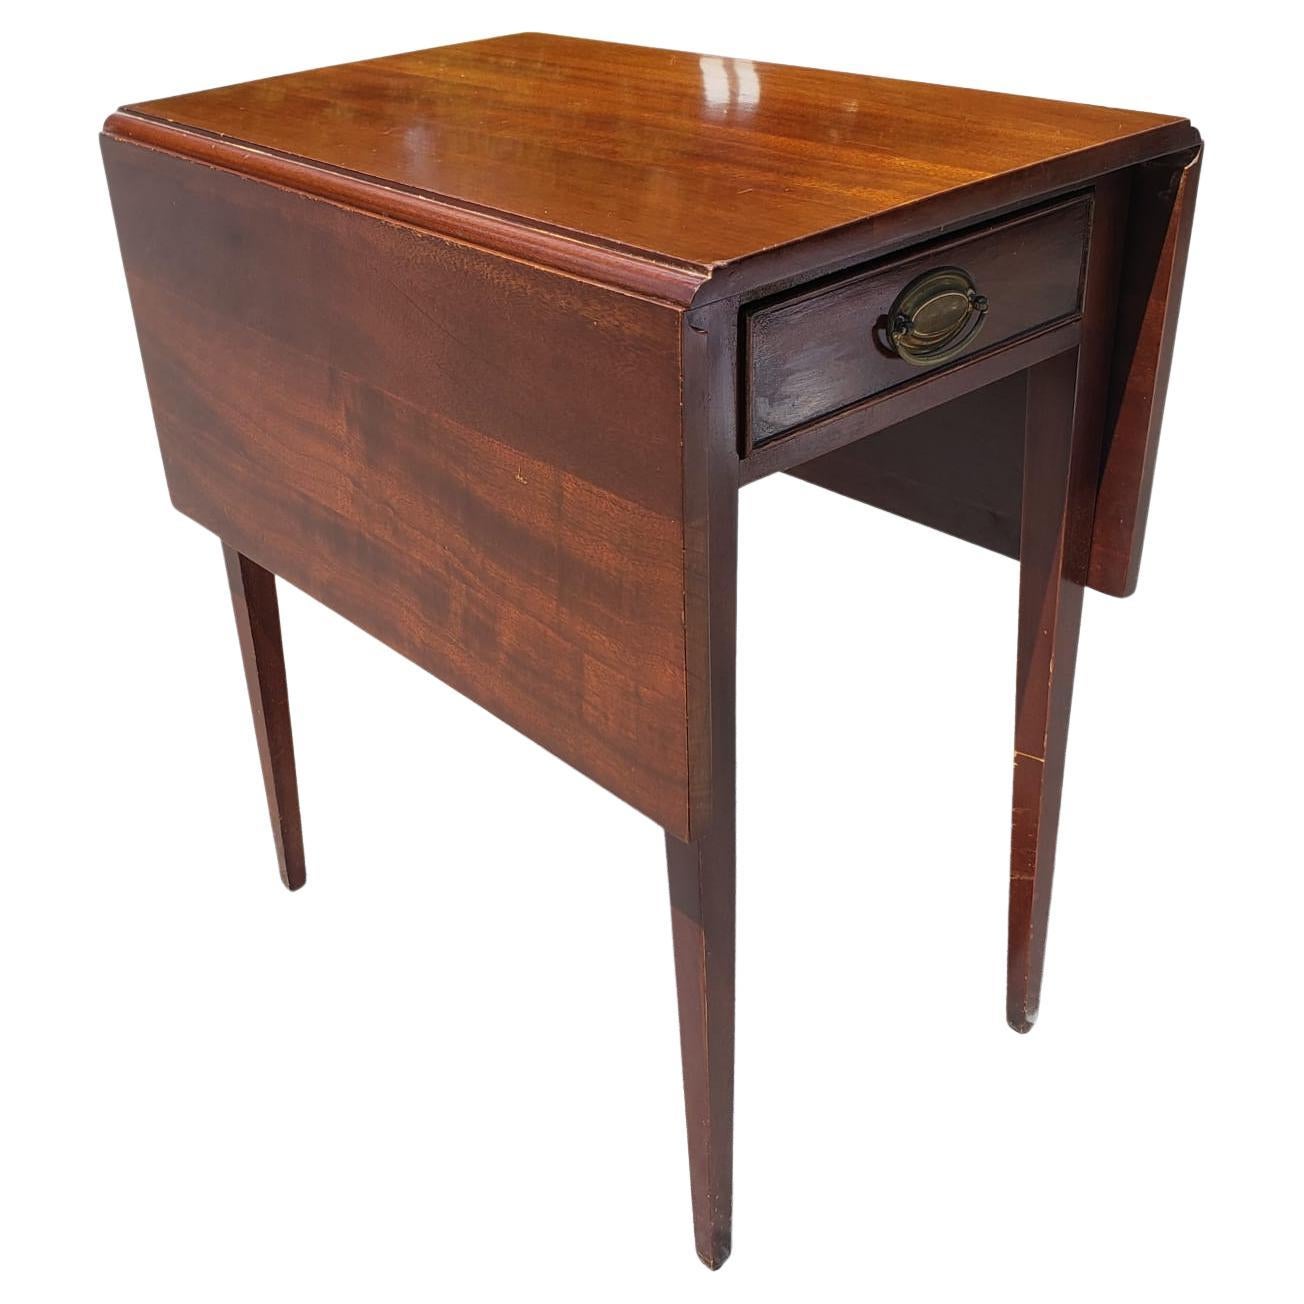 1940er Jahre Vintage-Stil Mahagoni Drop Blatt Tisch in gutem Zustand mit Filz gefüttert Schublade.
Messen Sie 15,5